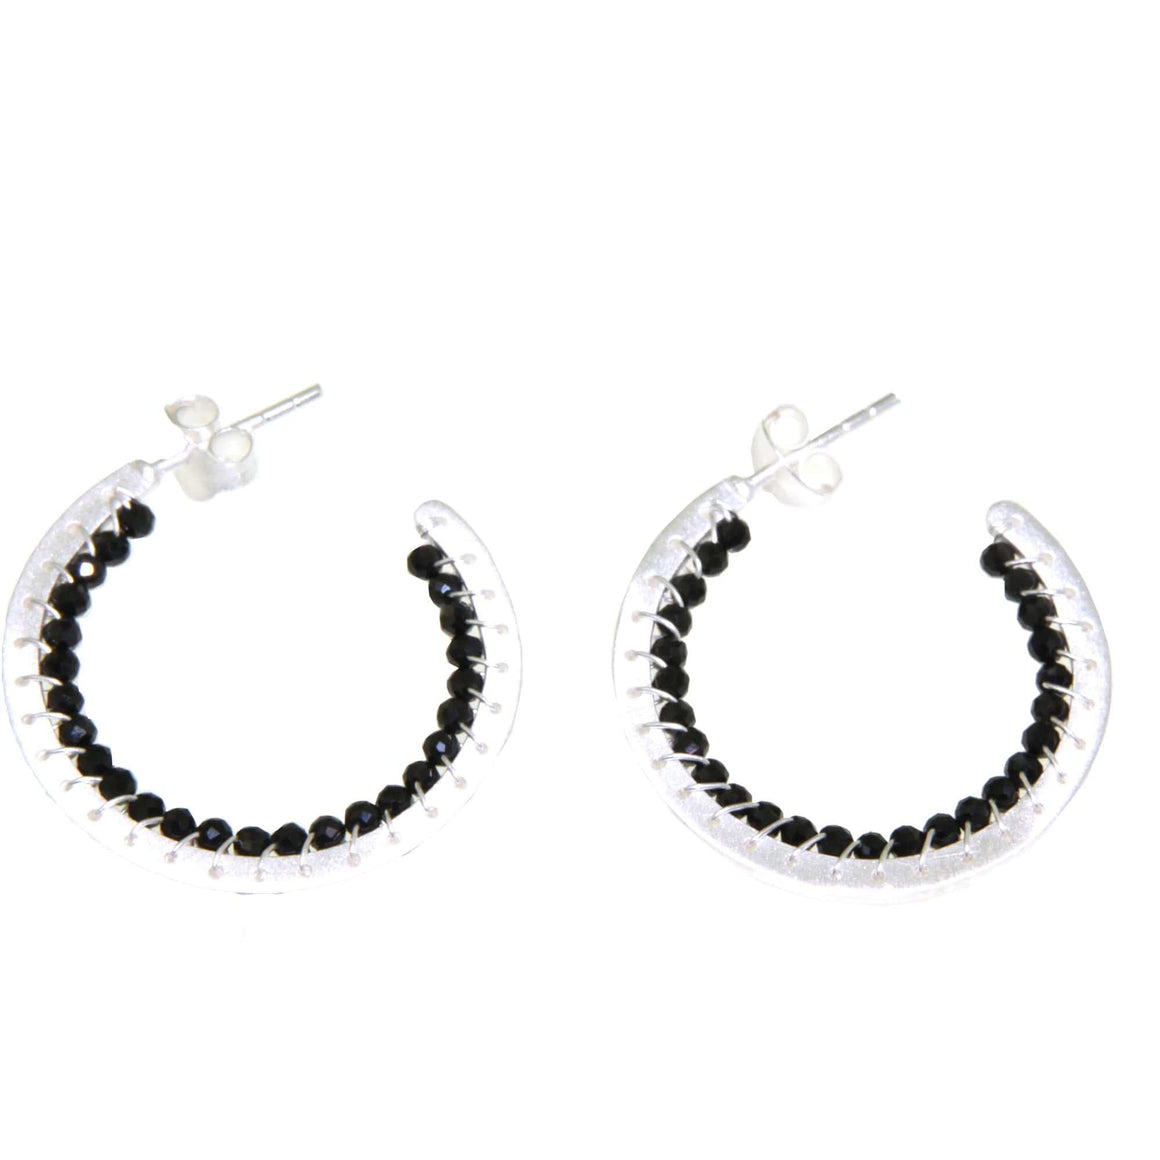 Manjusha Jewels earrings Black Spinel Silver Earrings